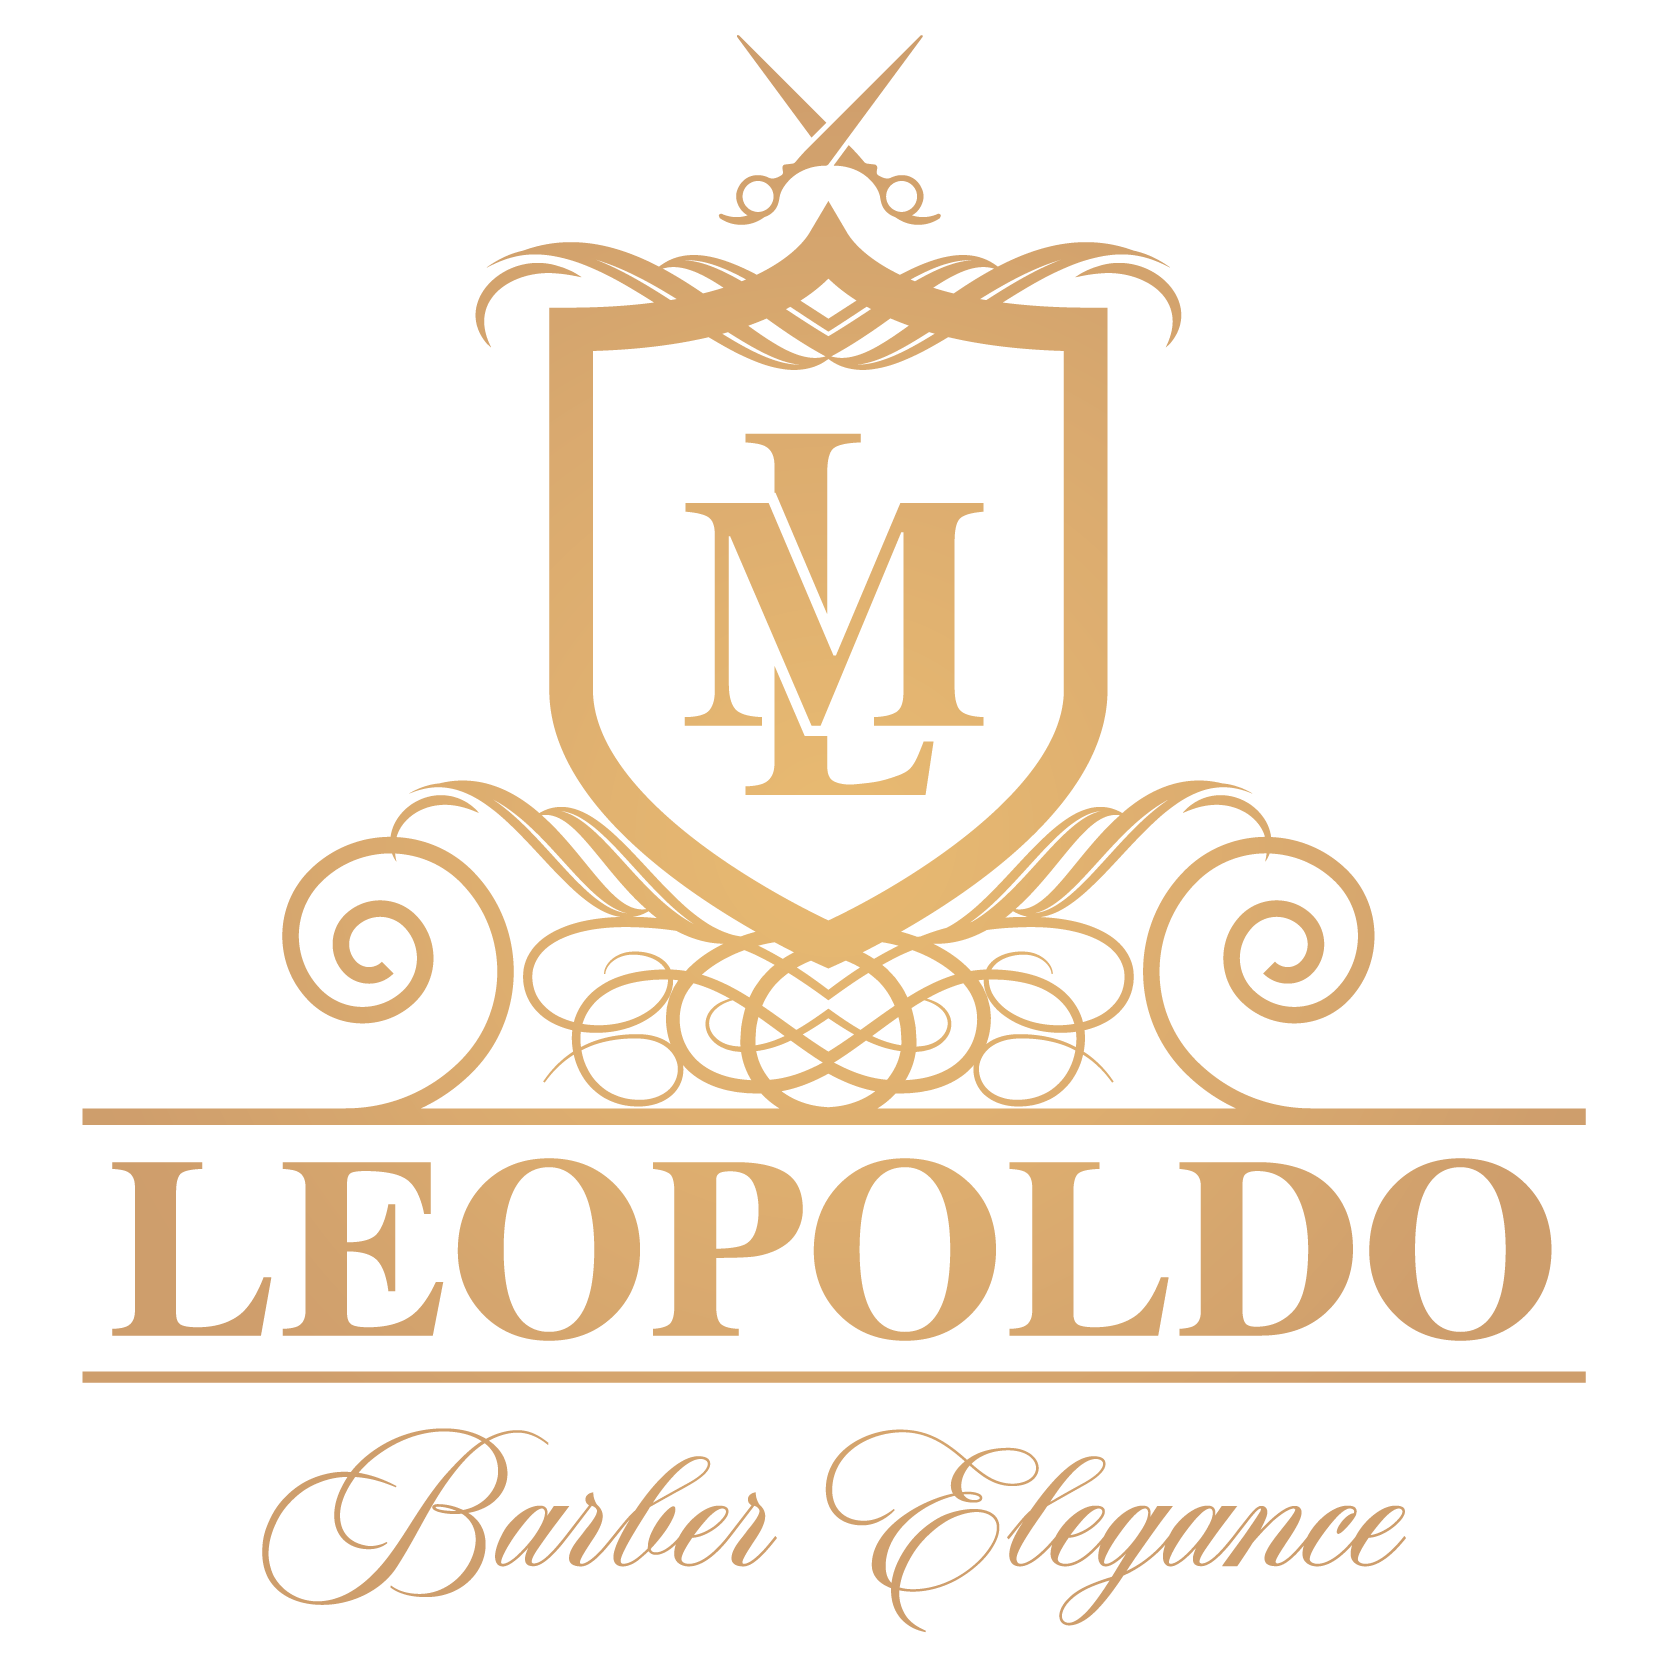 Leopoldo Barber Elegance